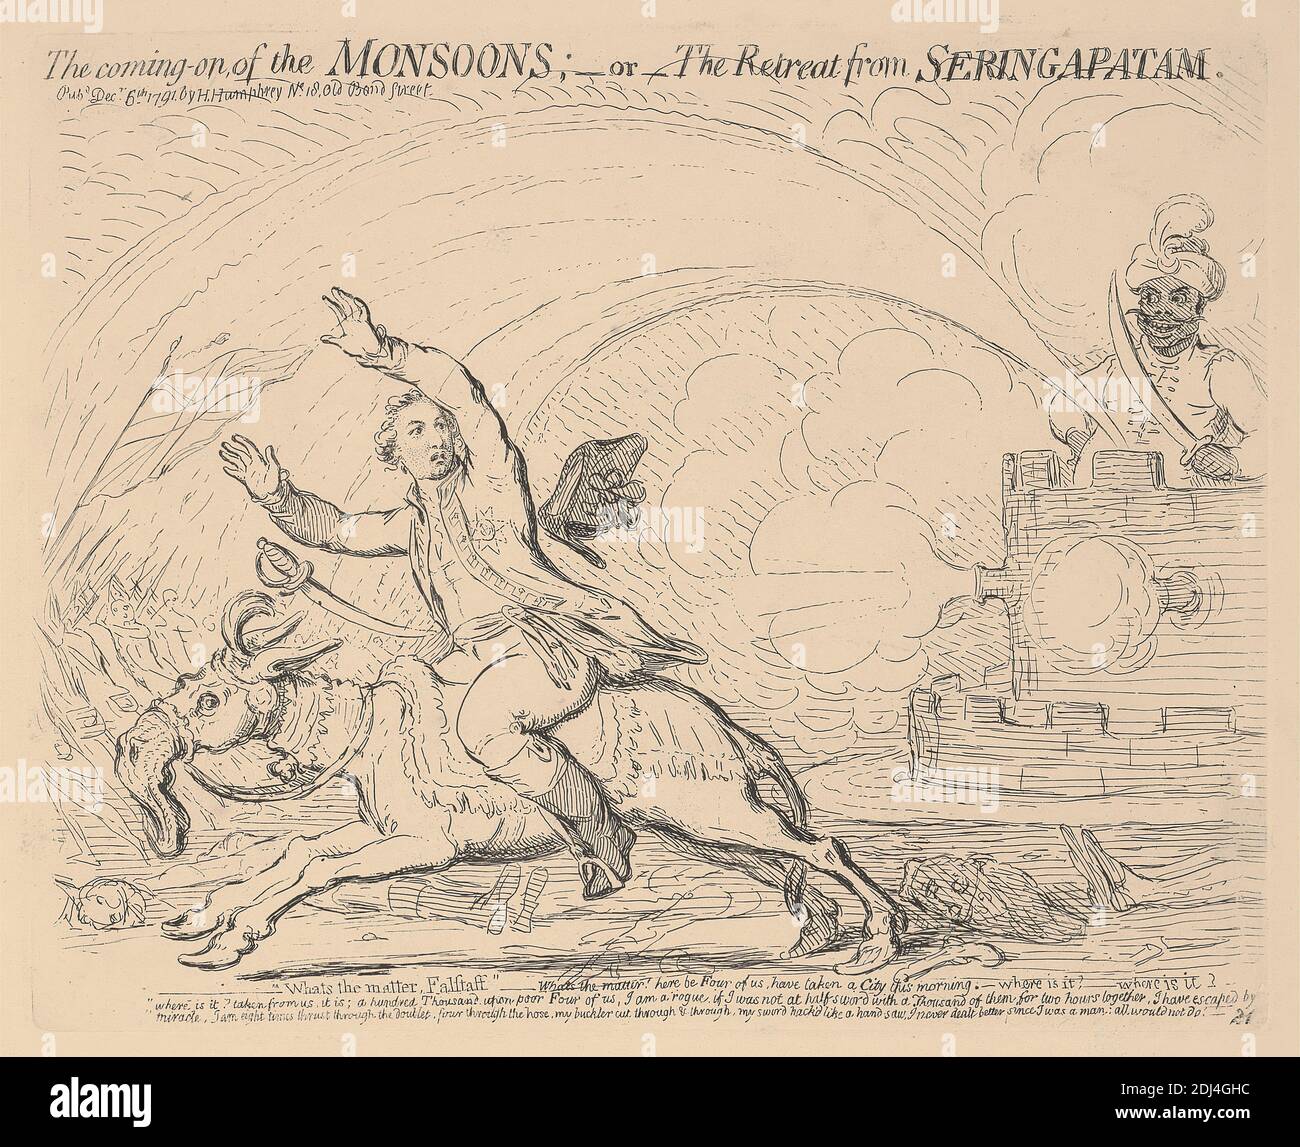 L'arrivée des moussons; - ou - la retraite de Seringapatam, James Gillray, 1757–1815, British, 1791, gravure, feuille: 25 3/8 x 19po. (64.5 x 48,3 cm Banque D'Images